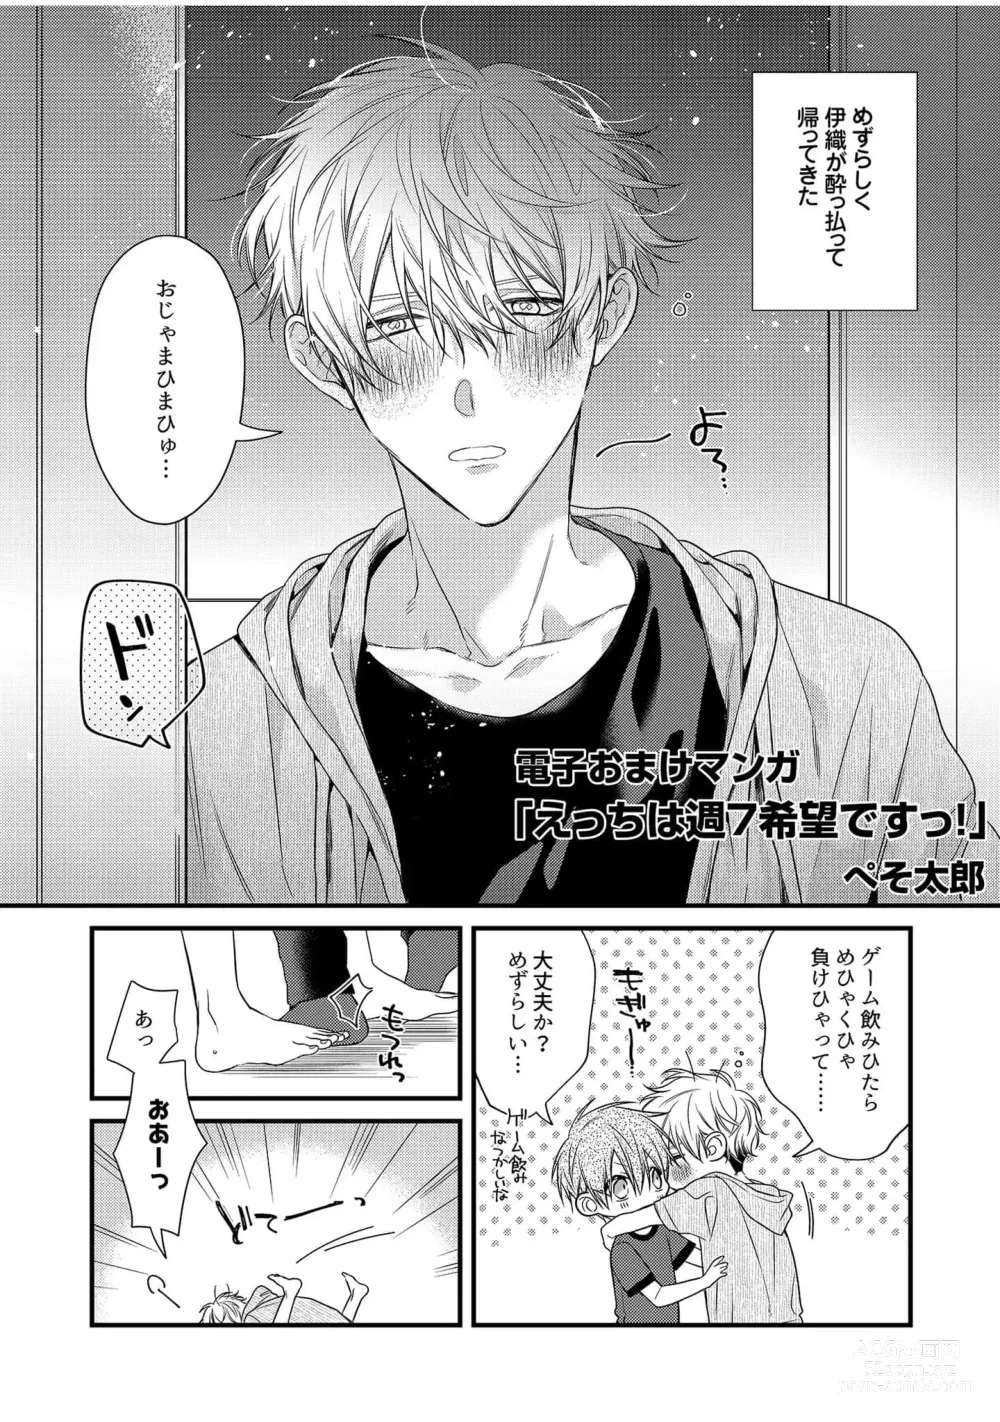 Page 203 of manga Ecchi wa shuu 7 Kibou Desu!